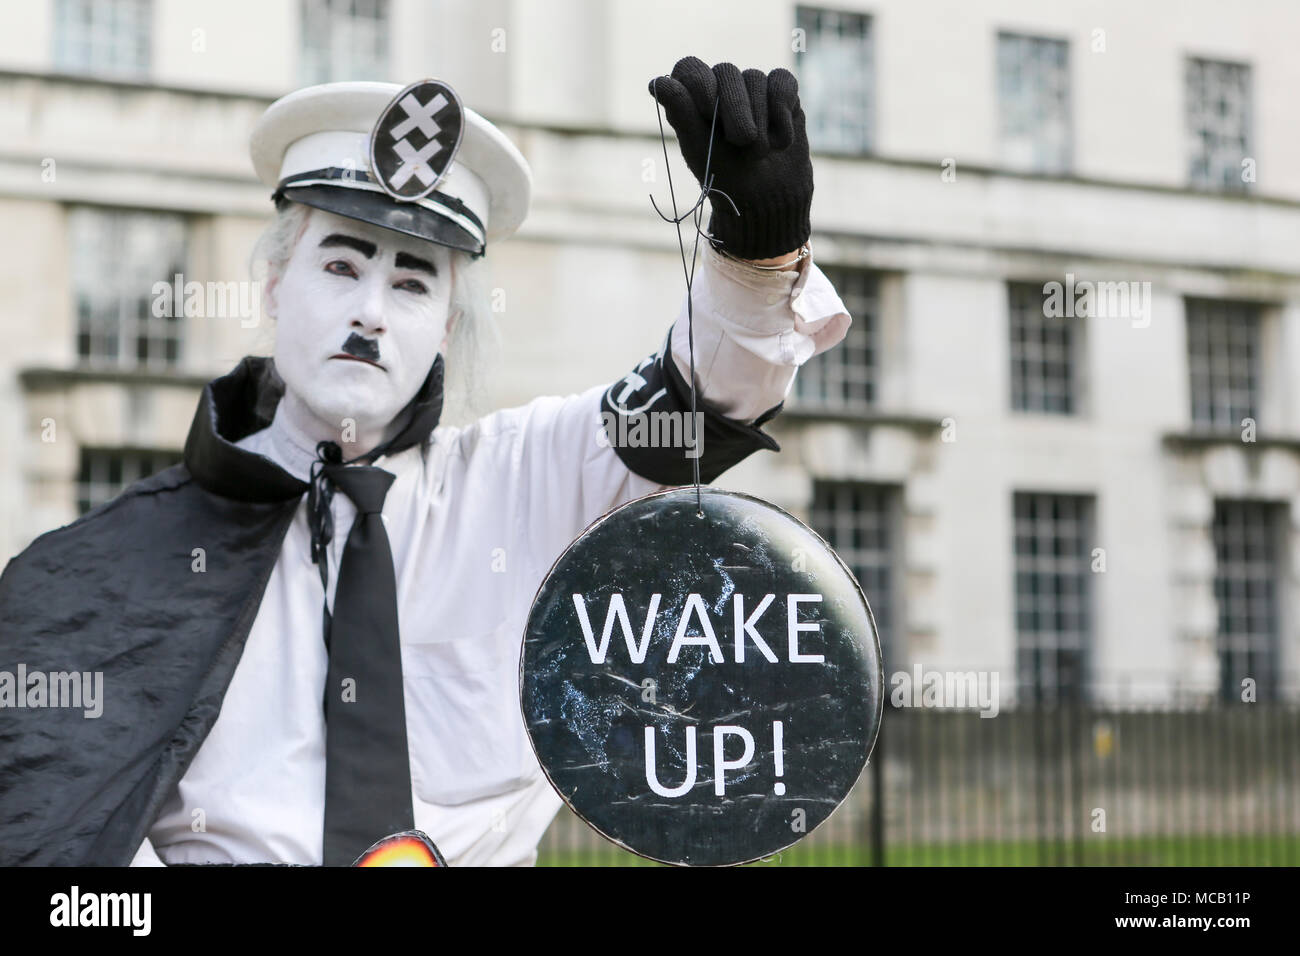 Londres, Royaume-Uni. 14 avril 2018. Un homme habillé comme Charlie Chaplin manifestations contre les attaques de missiles syriens en dehors de Downing Street, Westminster. Penelope Barritt/Alamy Live News Banque D'Images